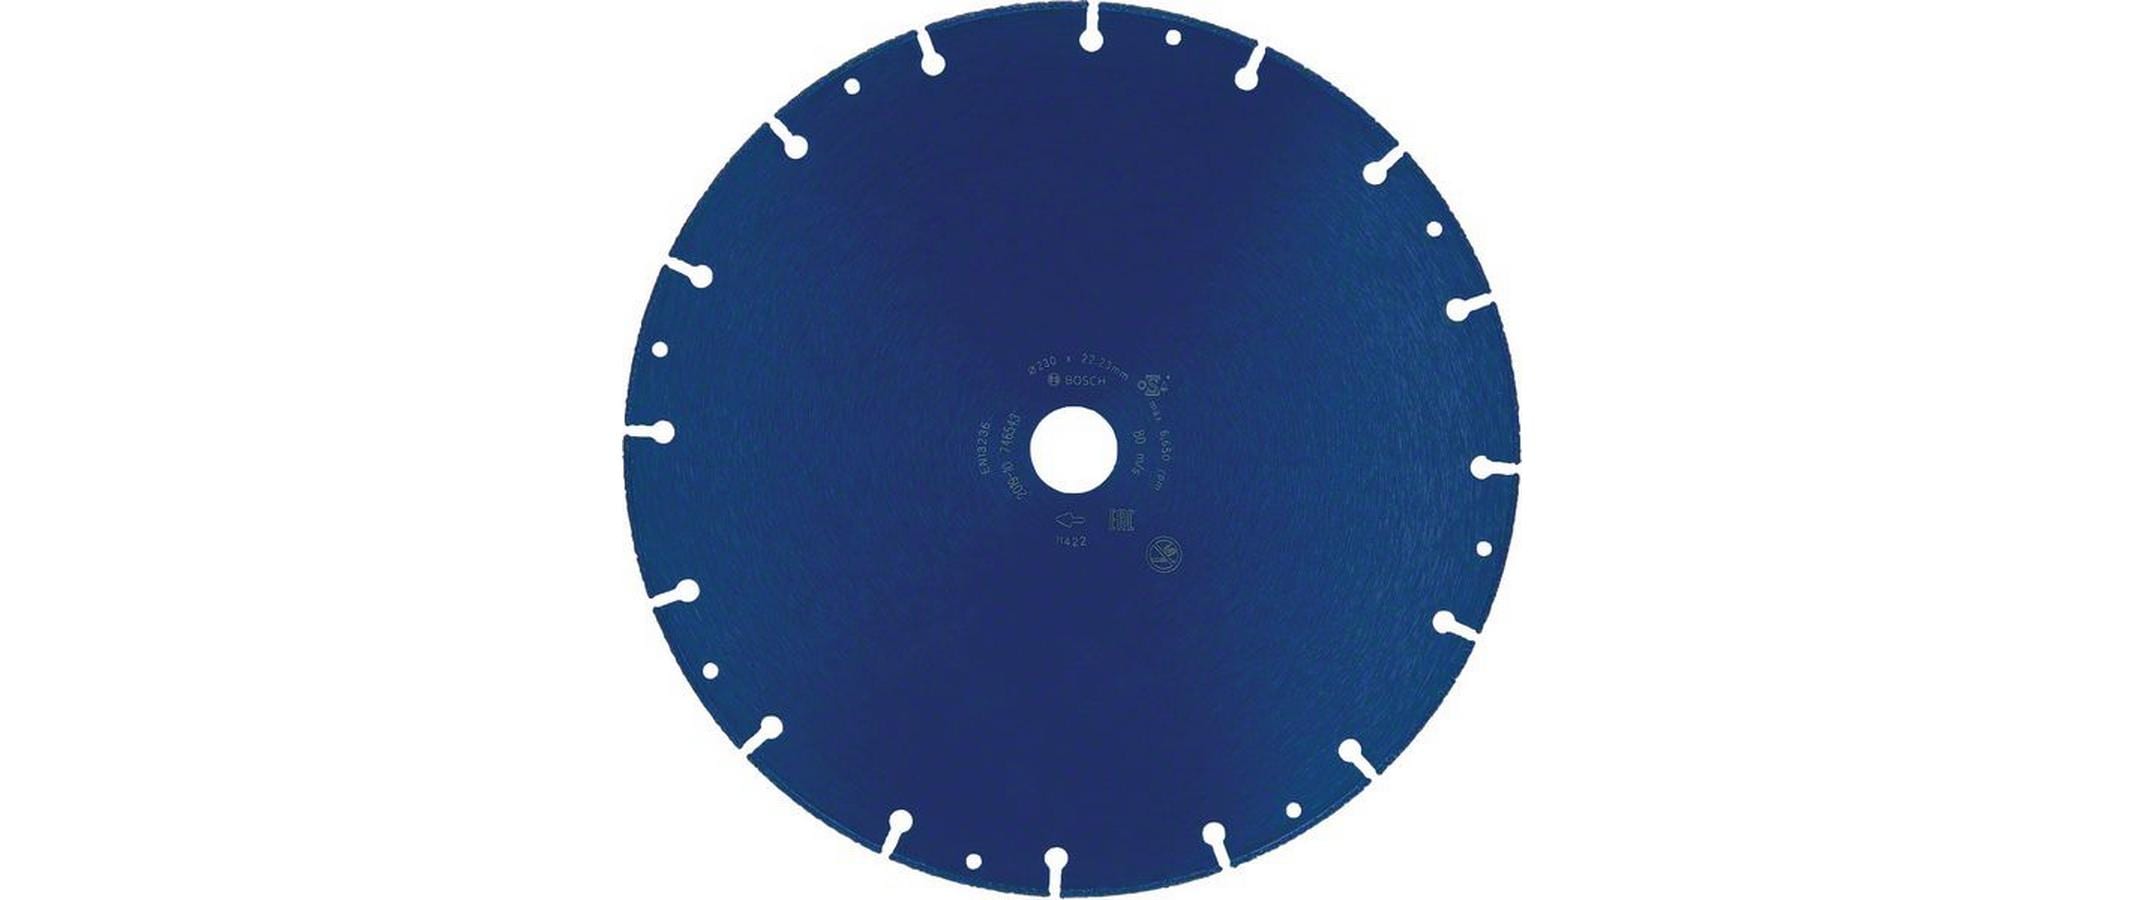 Bosch Professional Trennscheibe EXPERT Diamond Metal Wheel, 230 mm